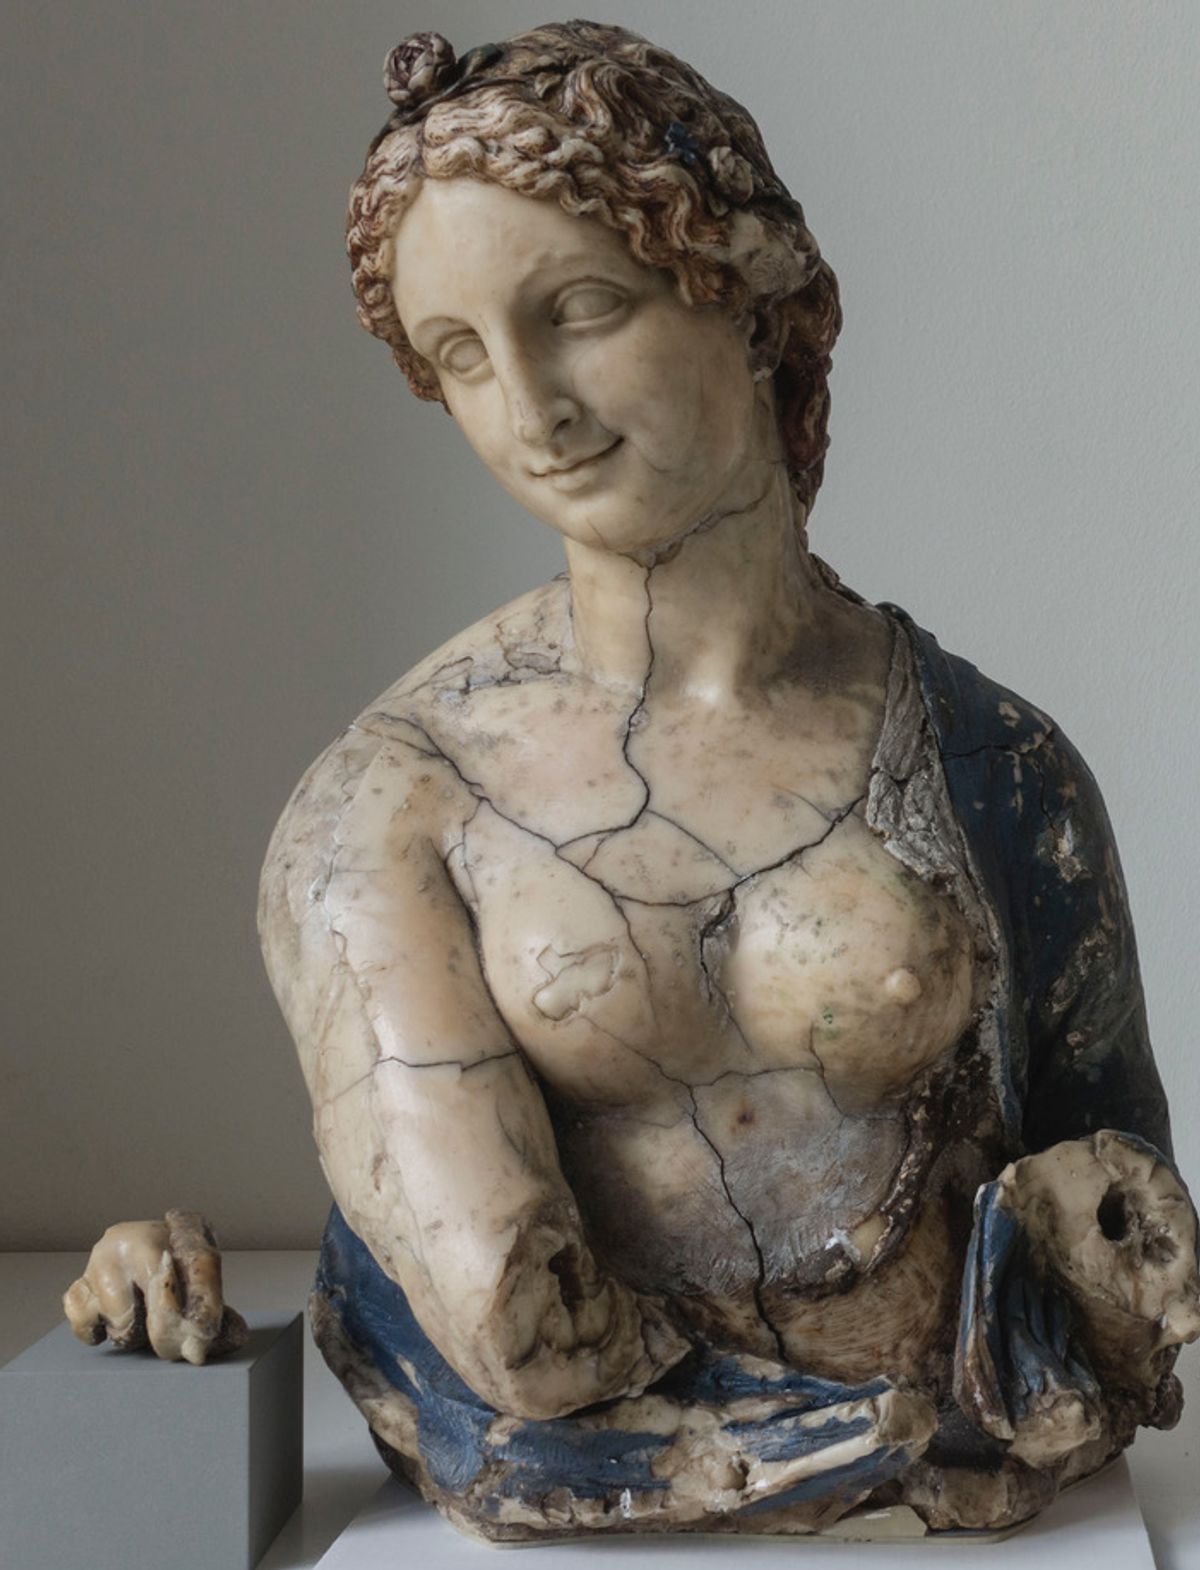 The bust of Flora may not be Leonardo after all Image: Stiftung Preußischer Kulturbesitz © SMB-SPK